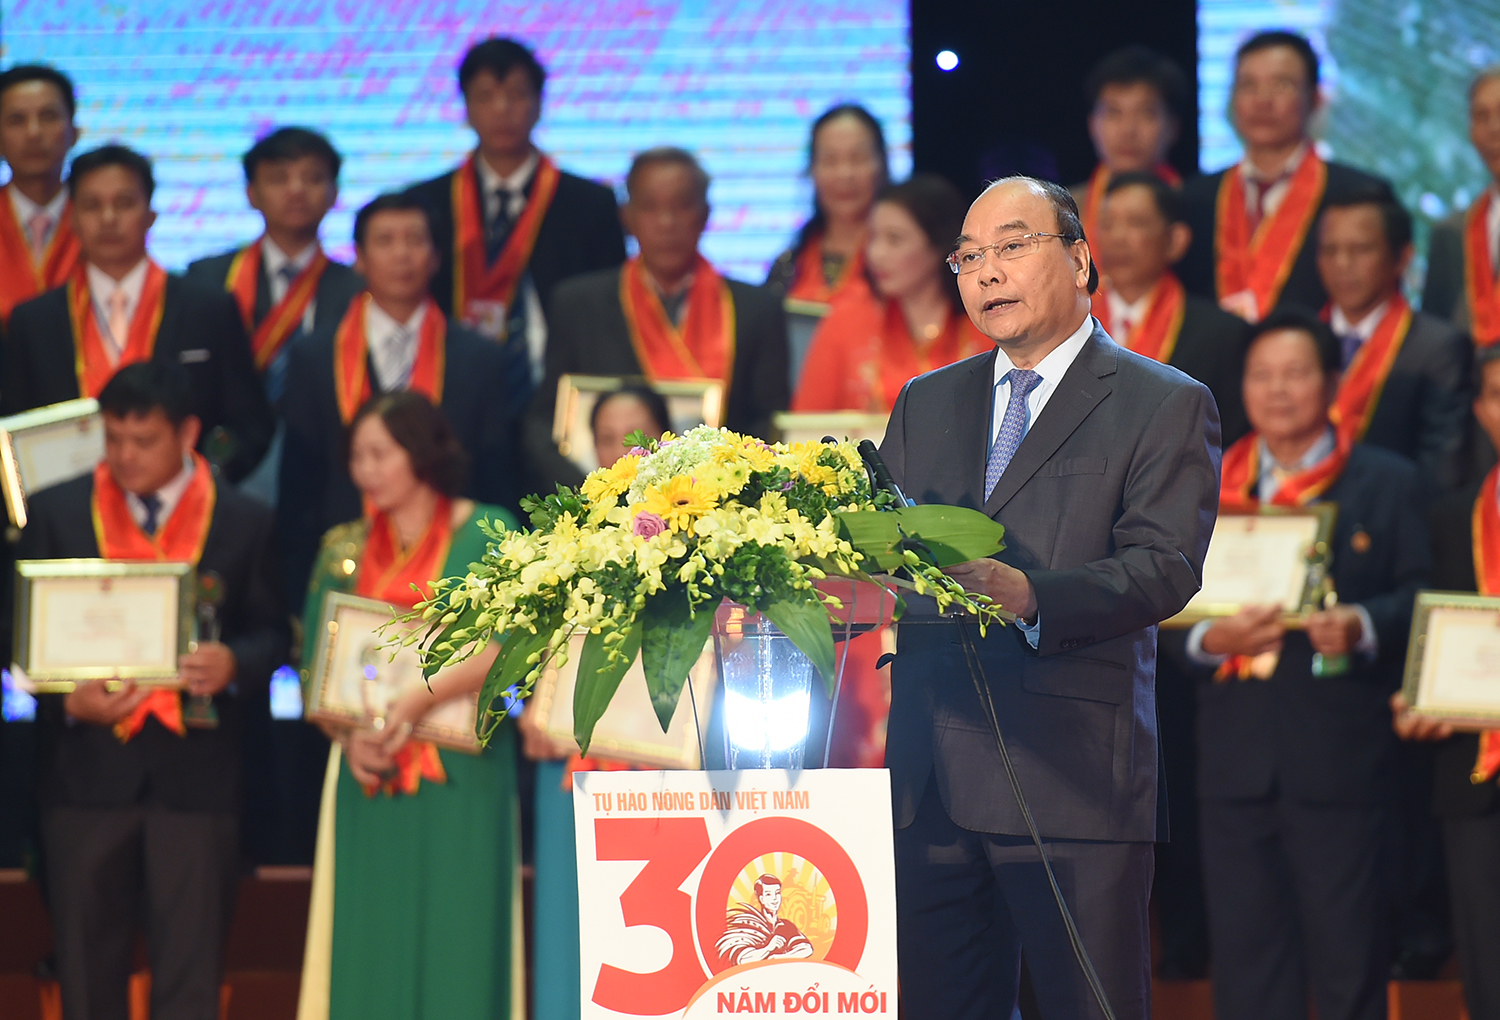 Thủ tướng phát biểu tại Chương trình Tự hào nông dân Việt Nam 30 năm Đổi mới.